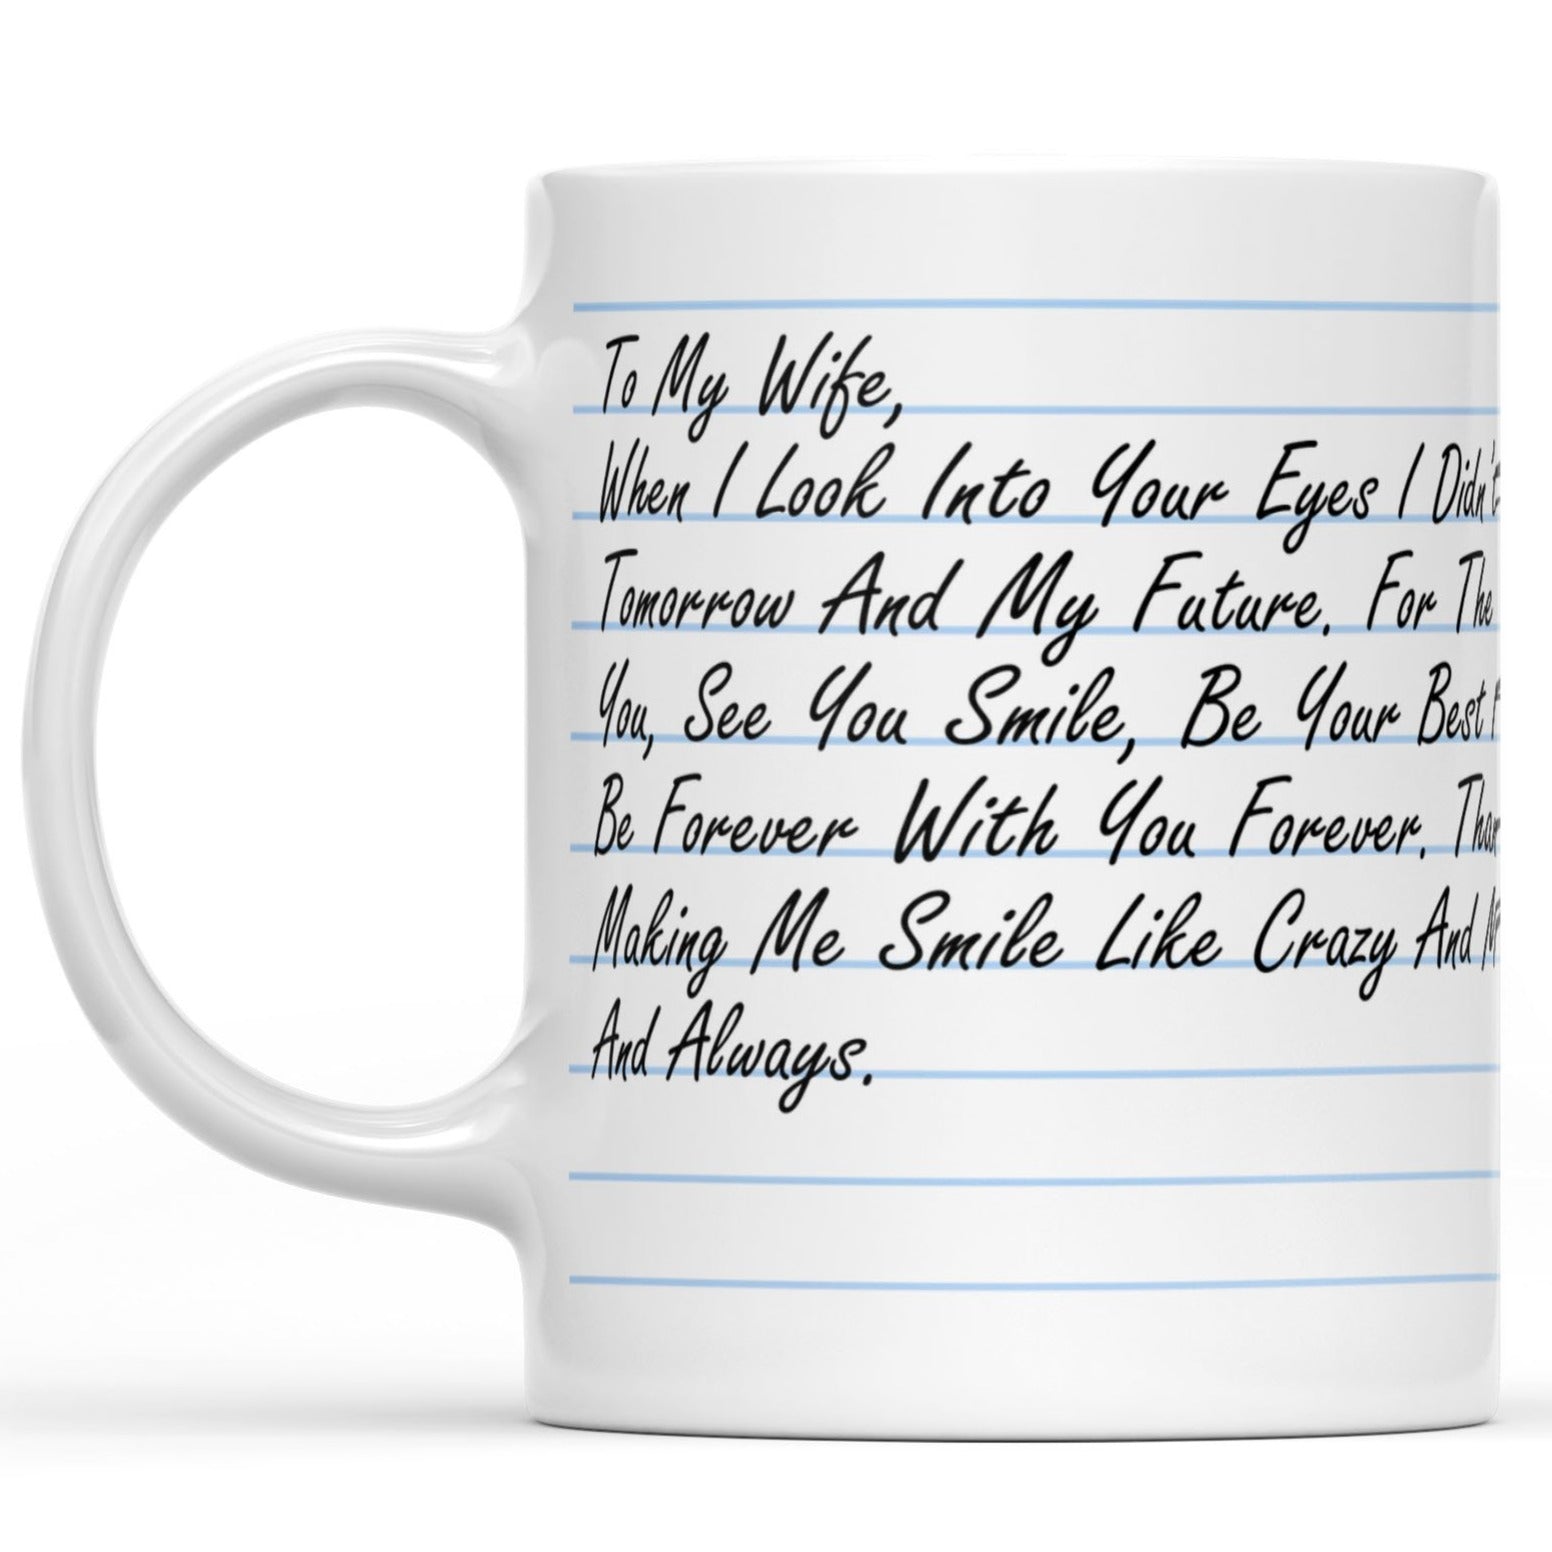 Custom Message Love Letter for Wife White Mug, Meaningful Anniversary Gift Mug for Her